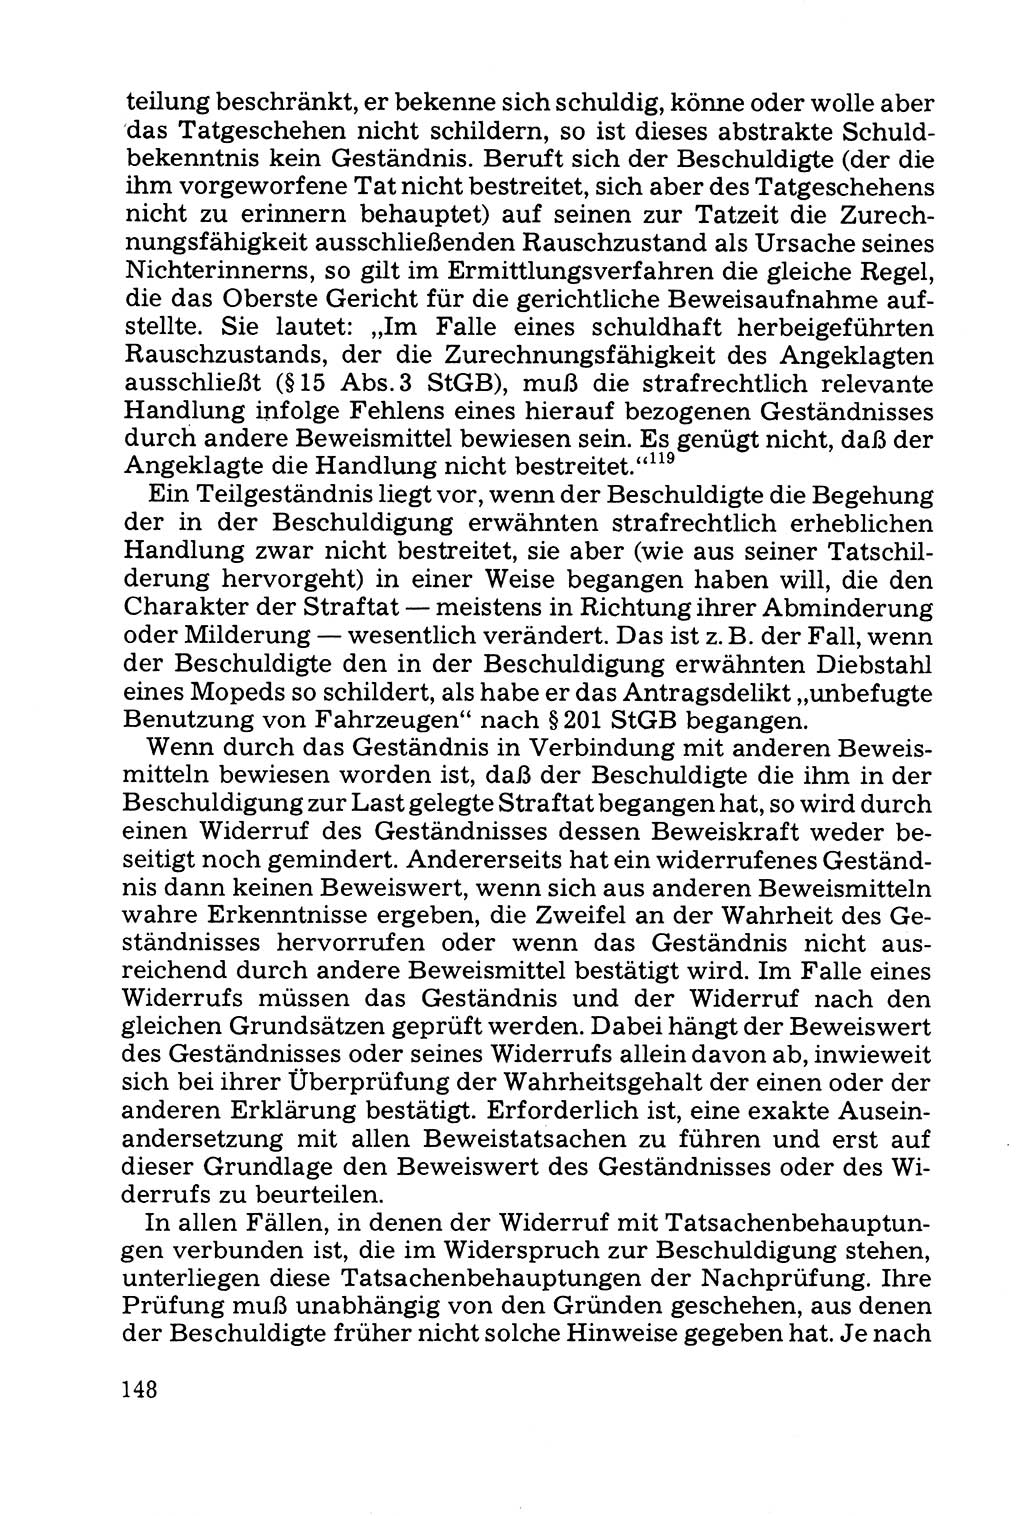 Grundfragen der Beweisführung im Ermittlungsverfahren [Deutsche Demokratische Republik (DDR)] 1980, Seite 148 (Bws.-Fhrg. EV DDR 1980, S. 148)